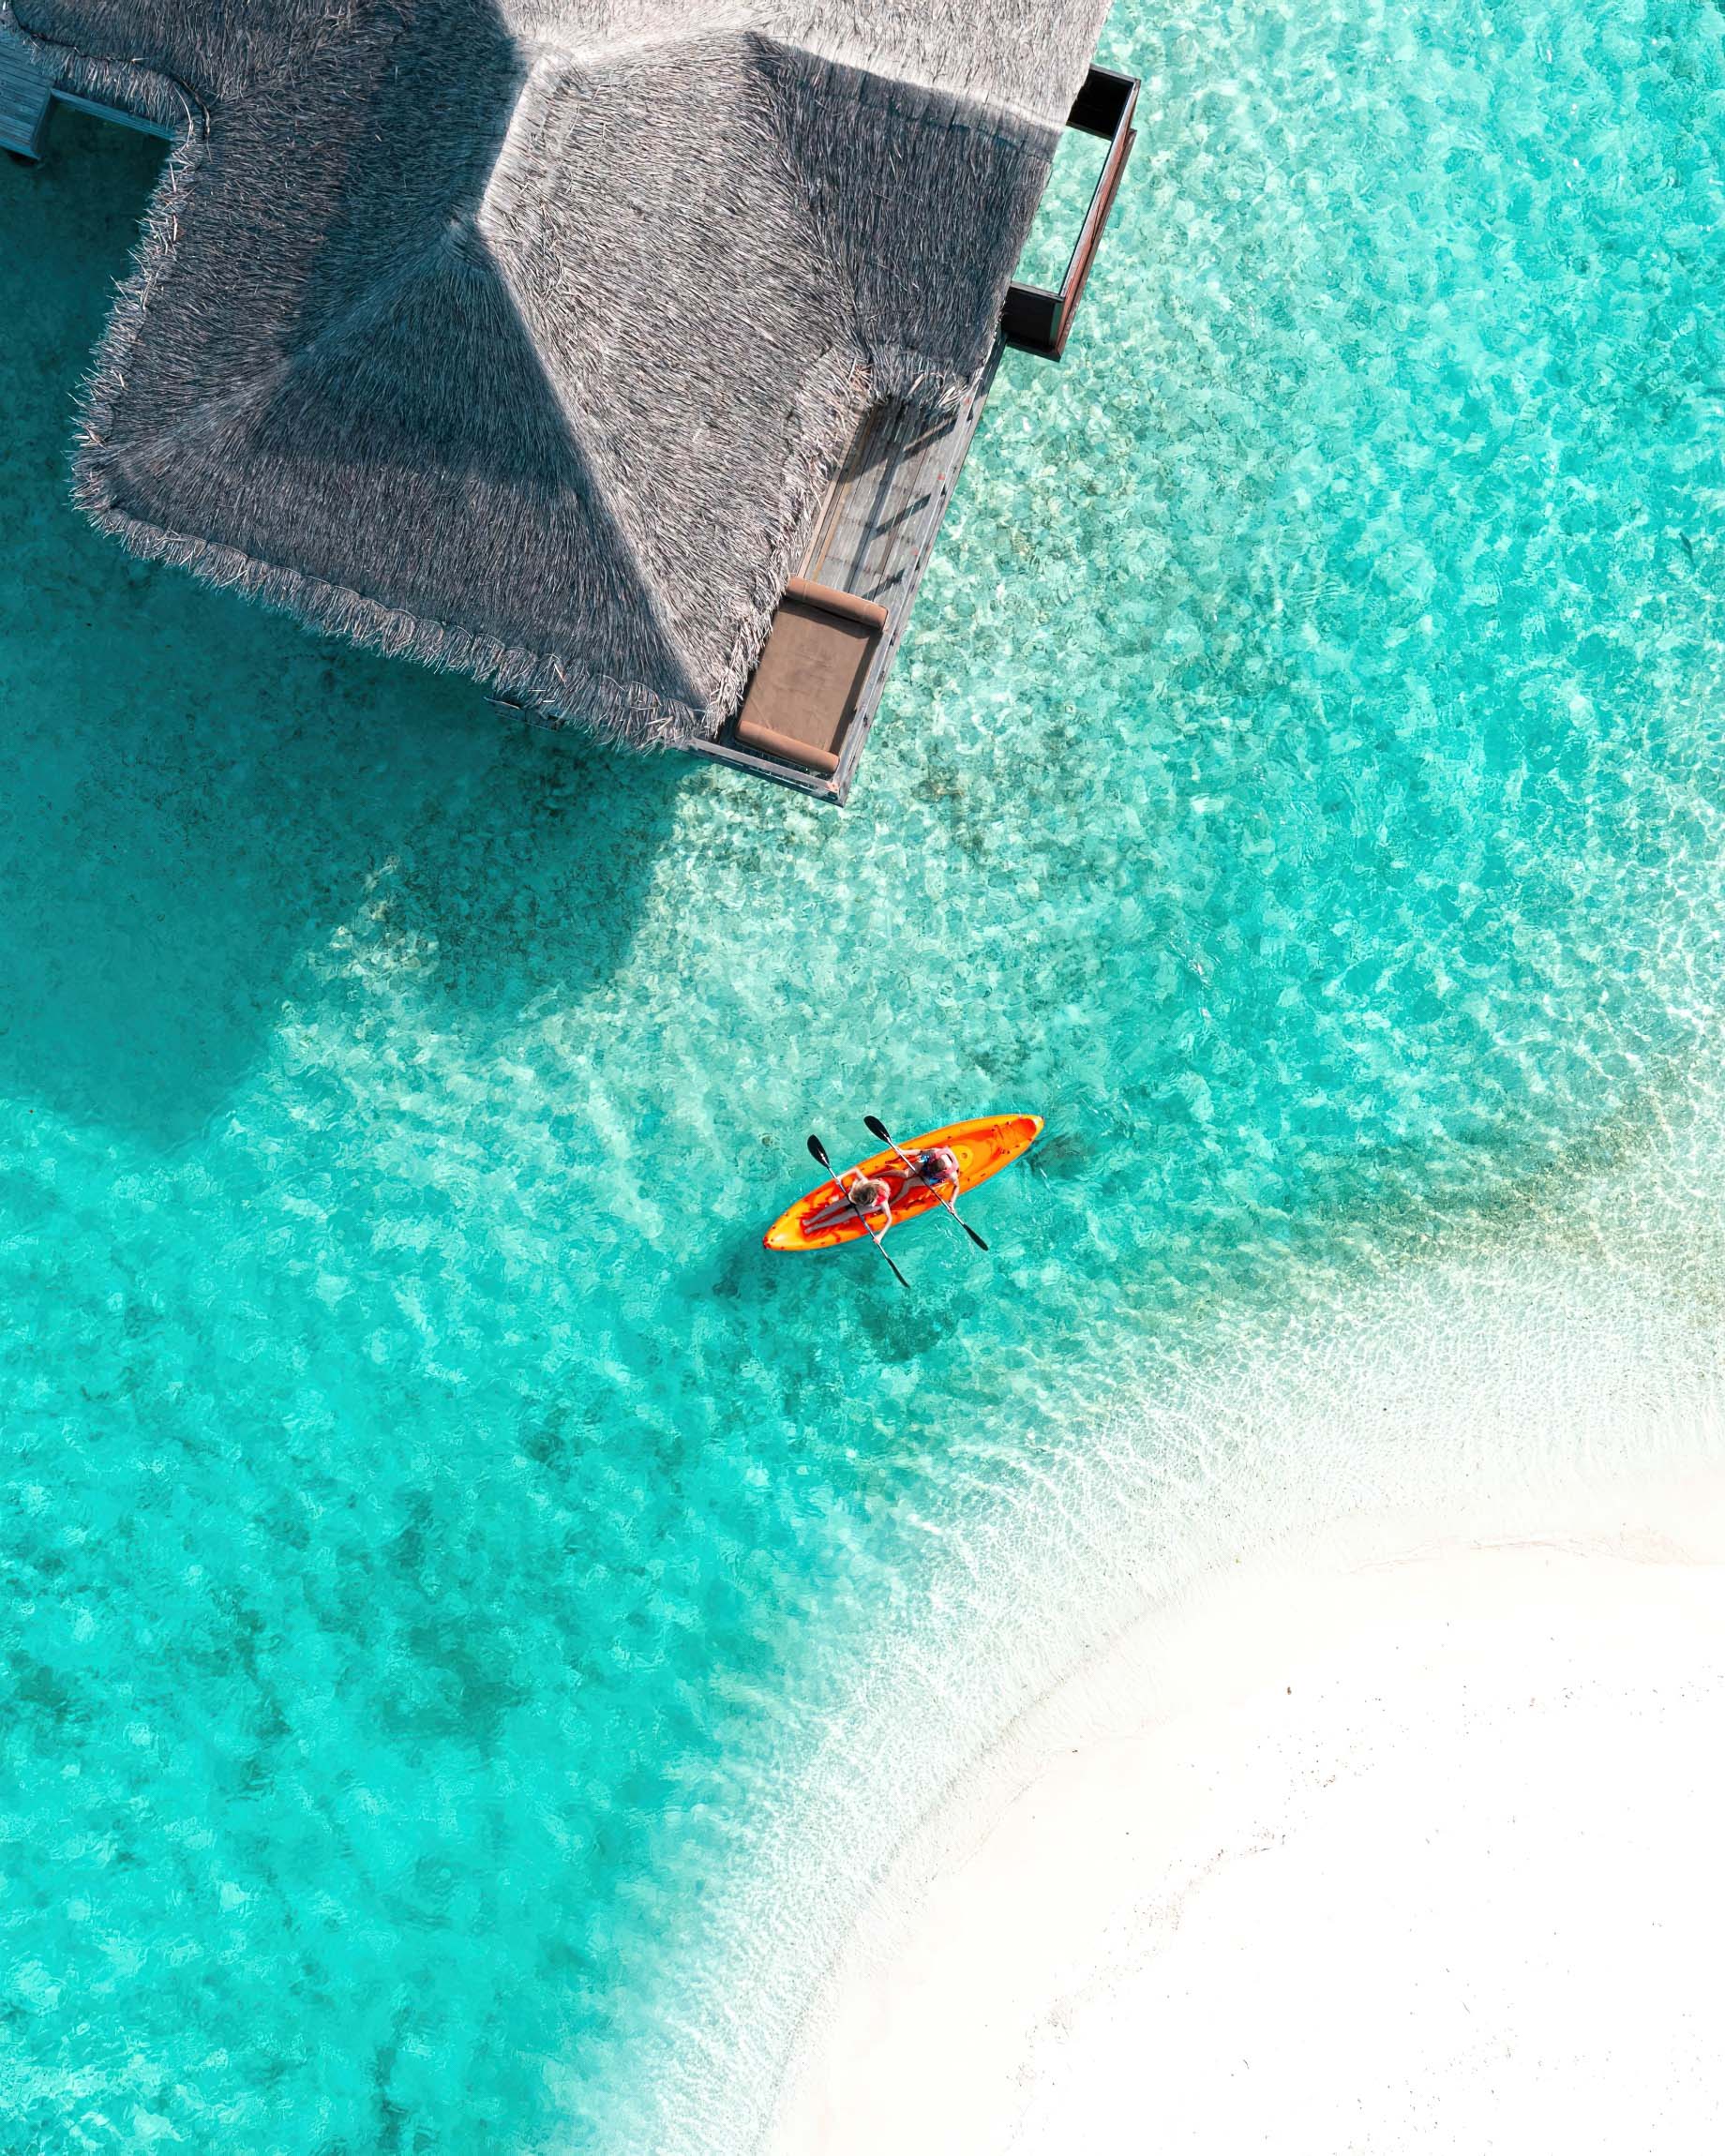 Anantara Veli Maldives Resort – South Male Atoll, Maldives – Kayaking